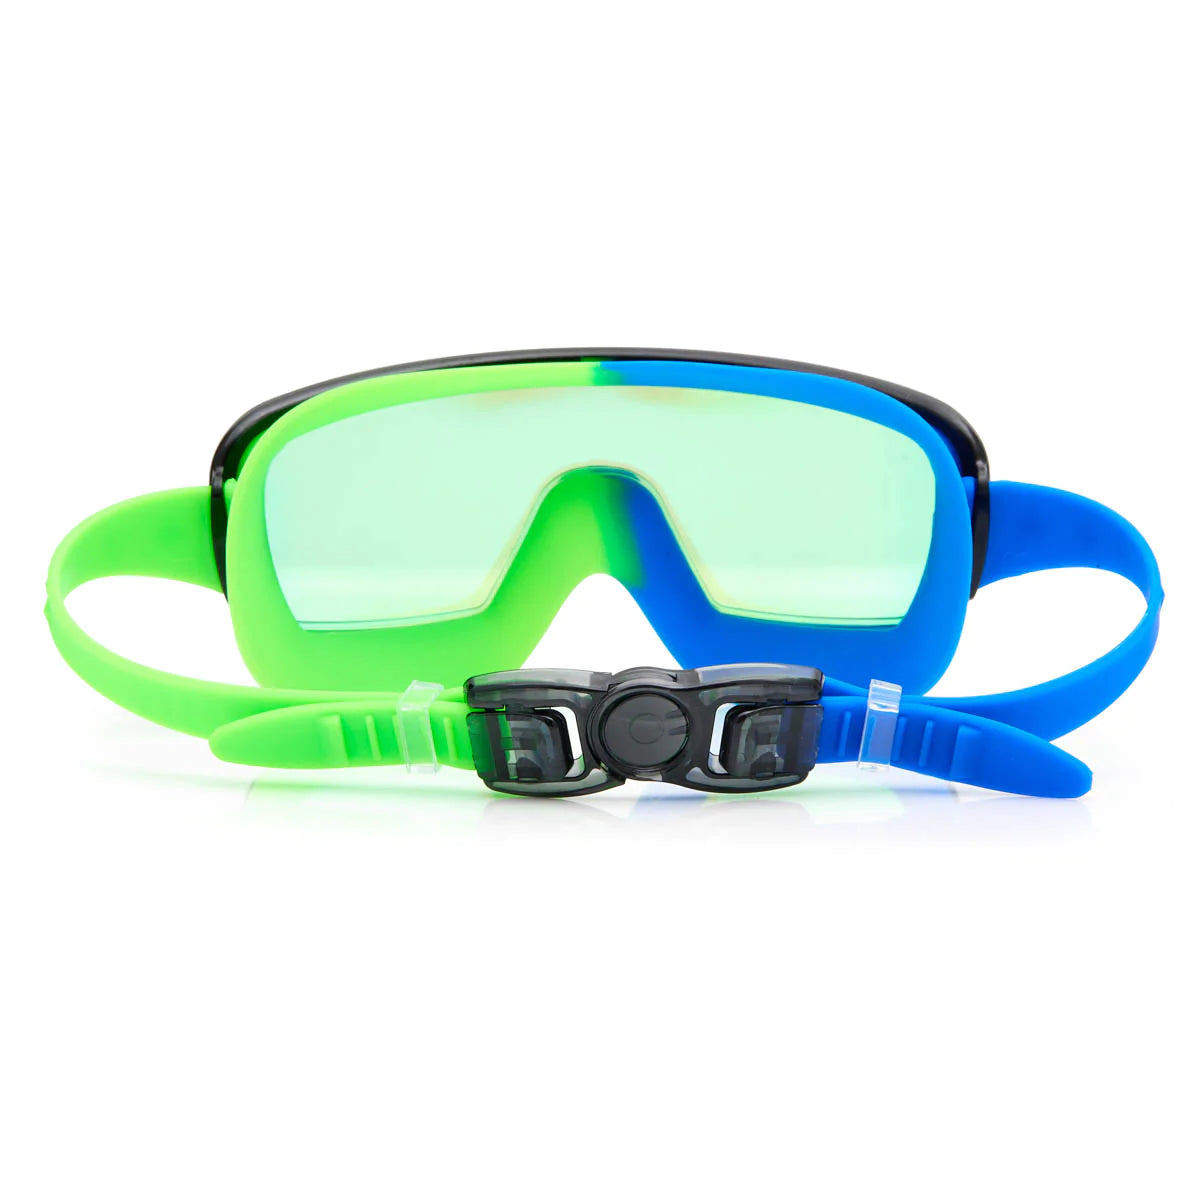 Gafas de natación Cyborg cian prismáticas